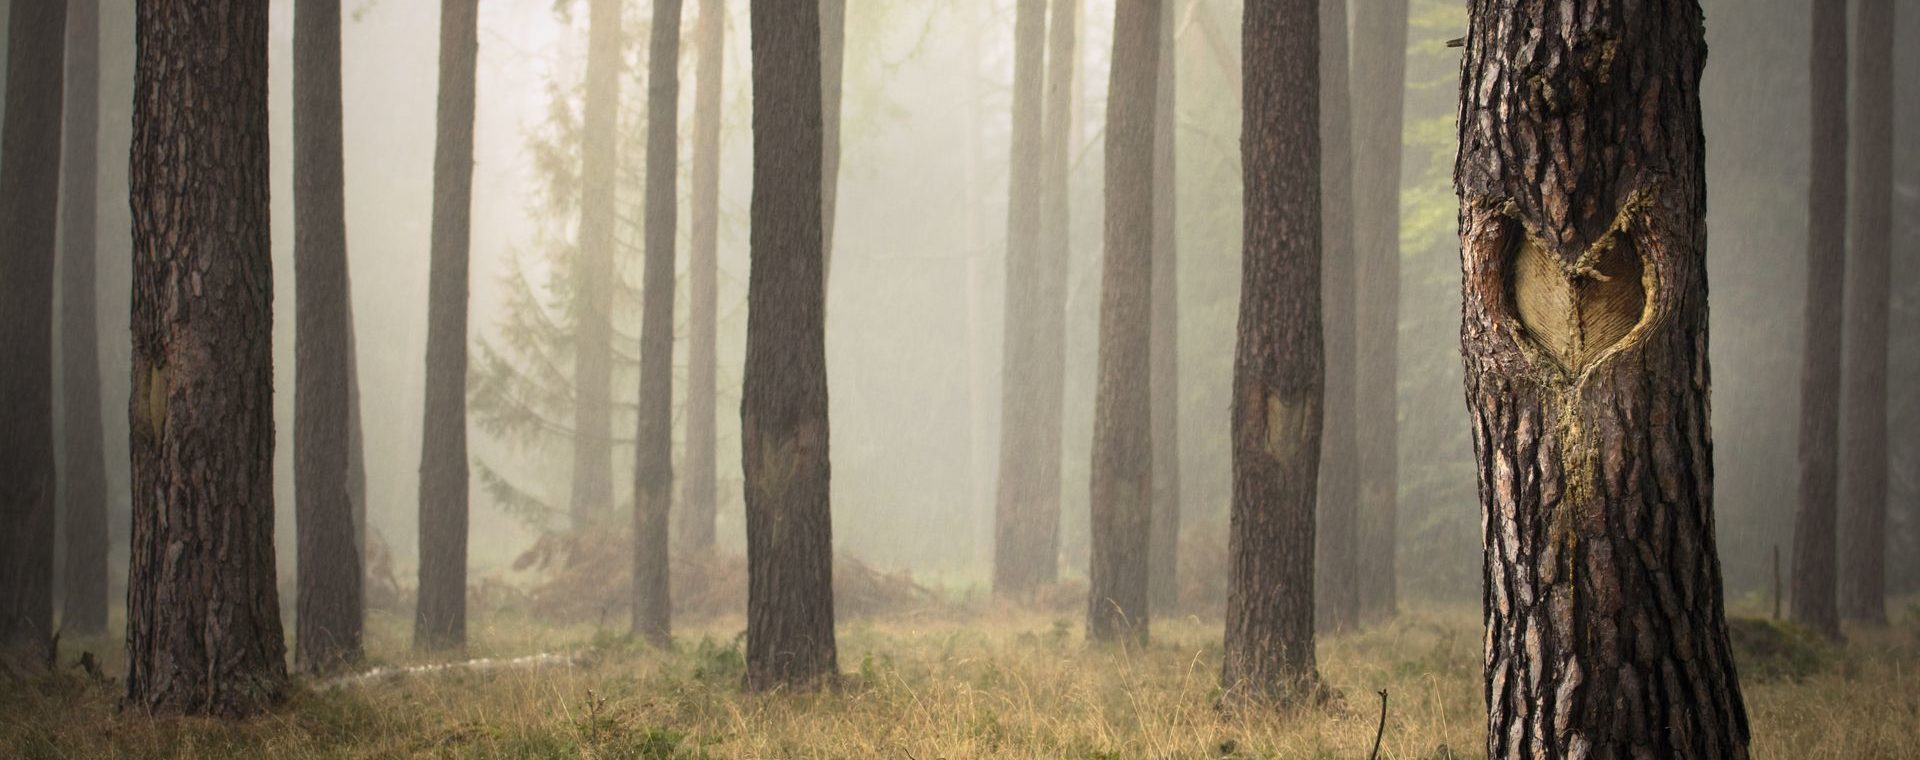 Kiefernwald im Nebel - Baumstamm mit eingeschnittenem Herz in der Rinde